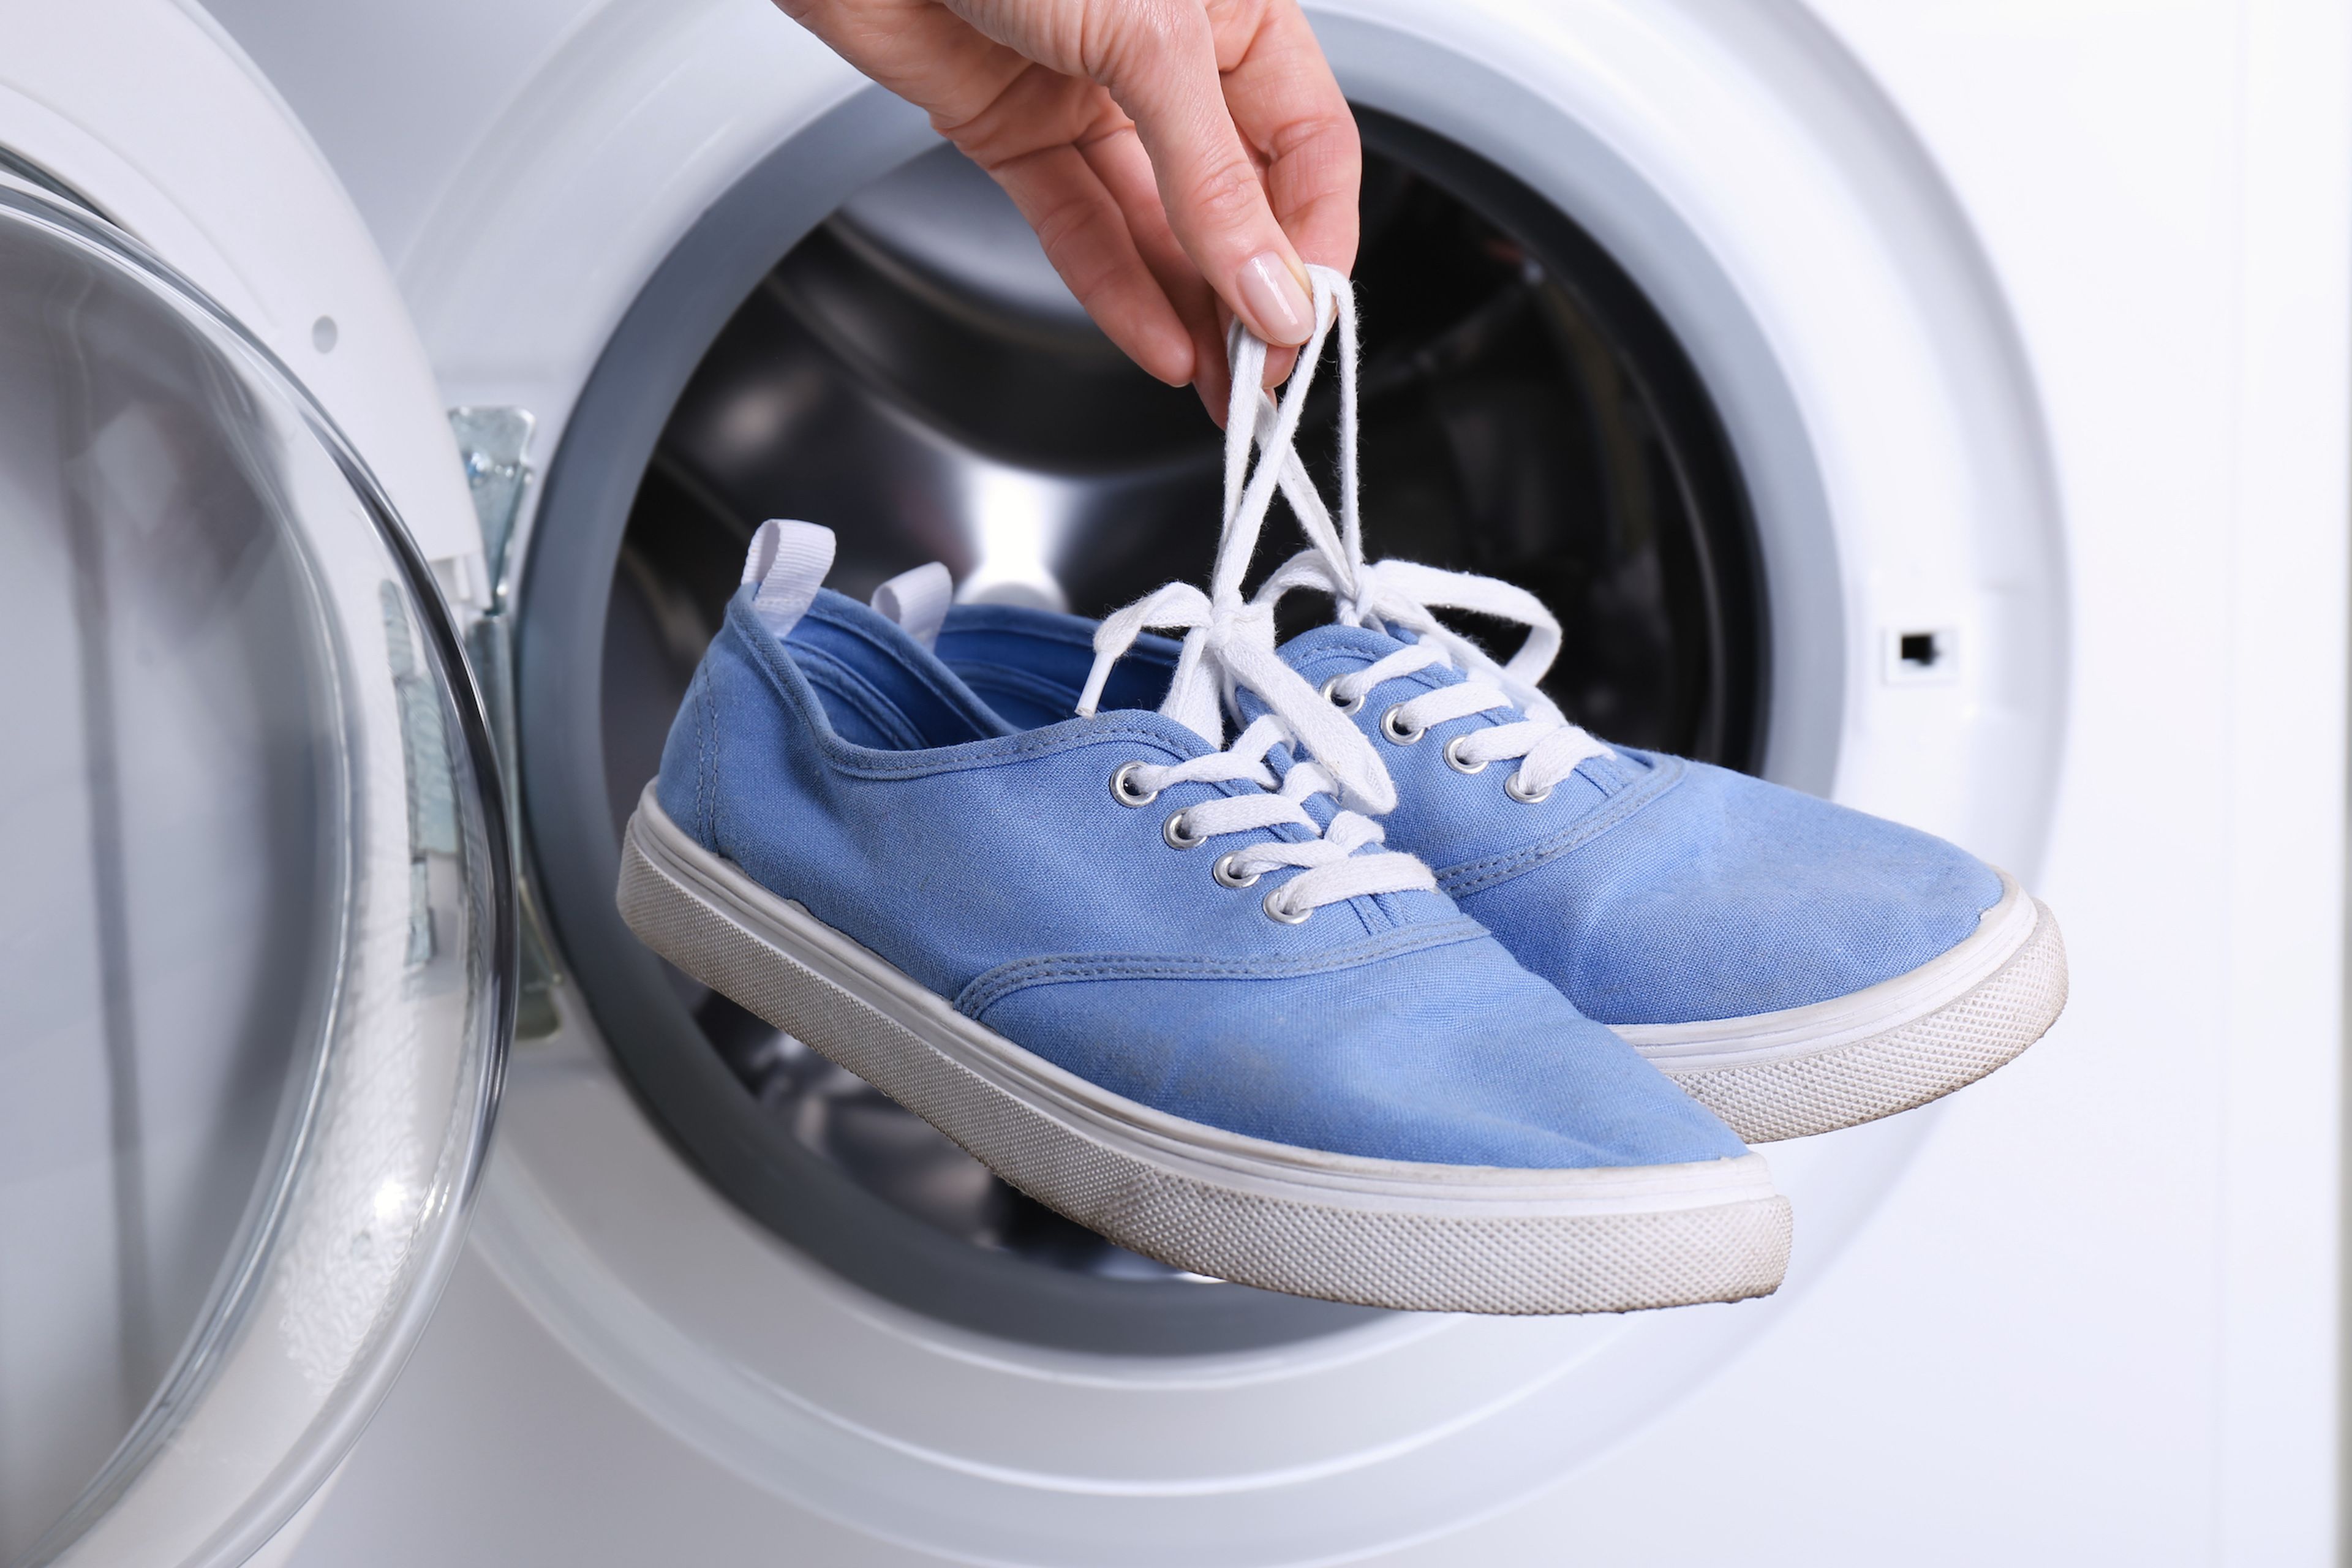 Lavar zapatillas en la lavadora